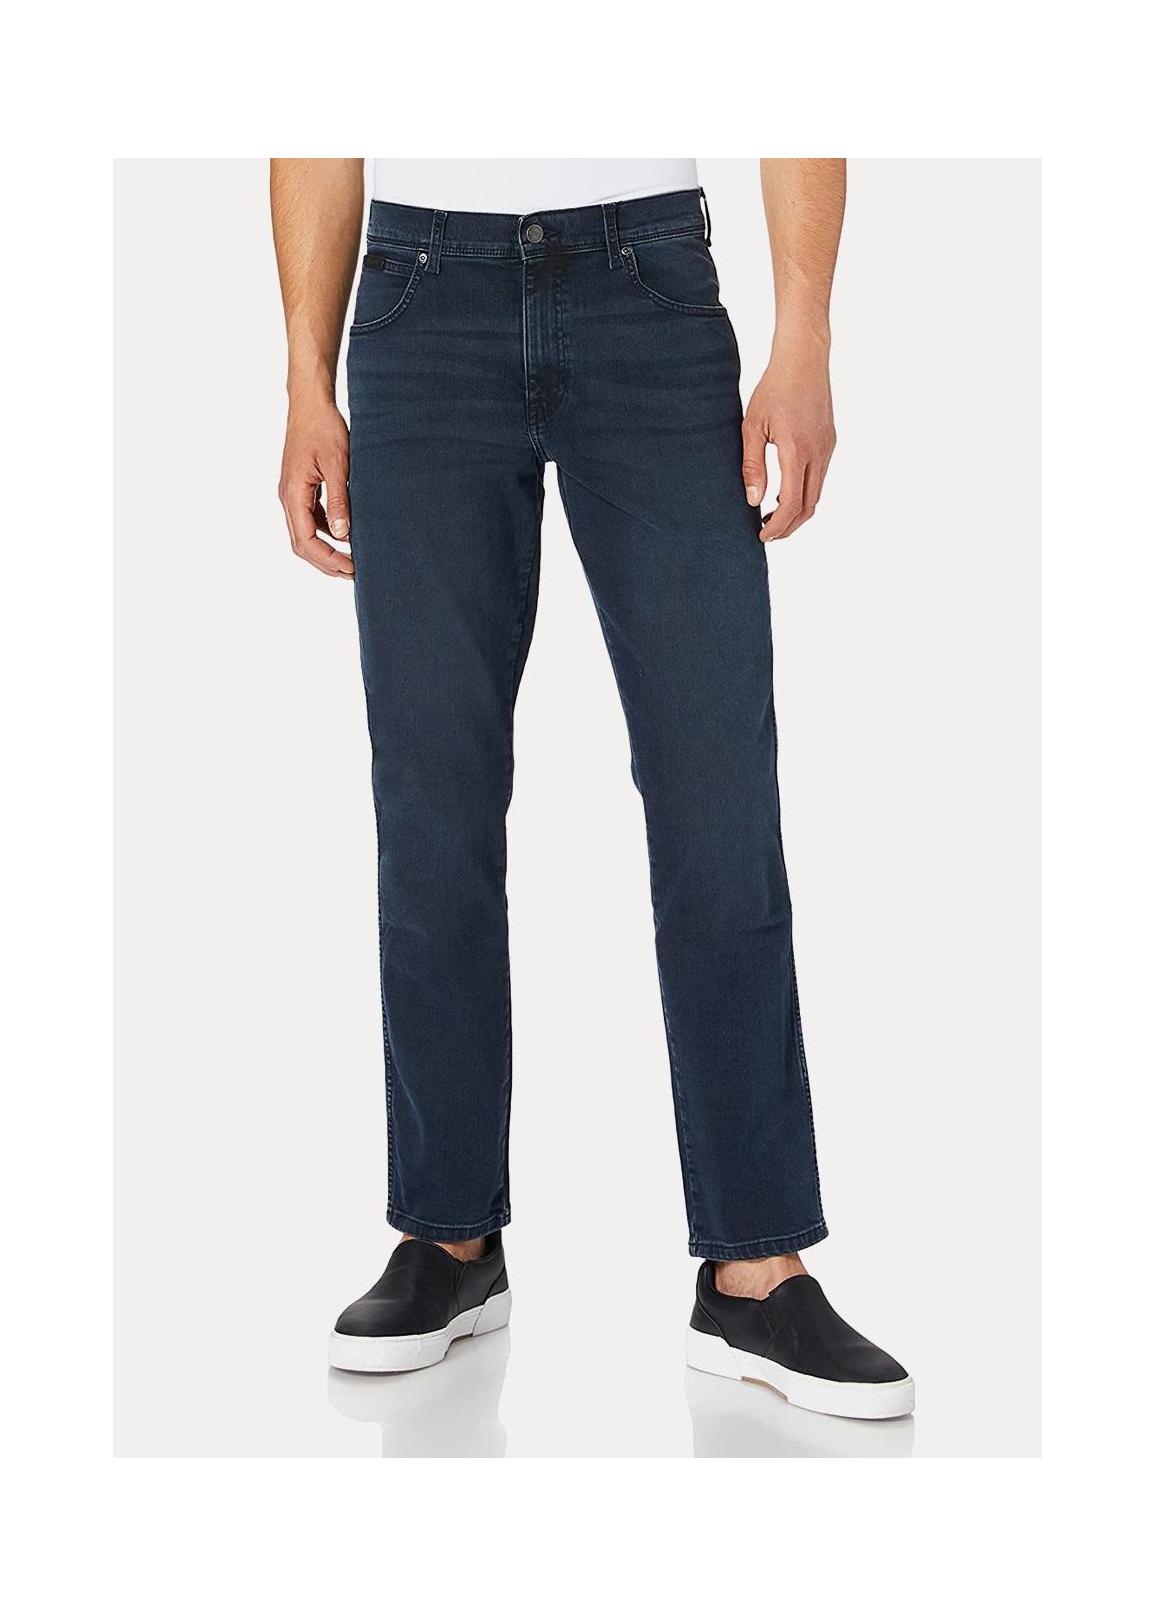 Wrangler® Texas Slim Jeans - Bruised River